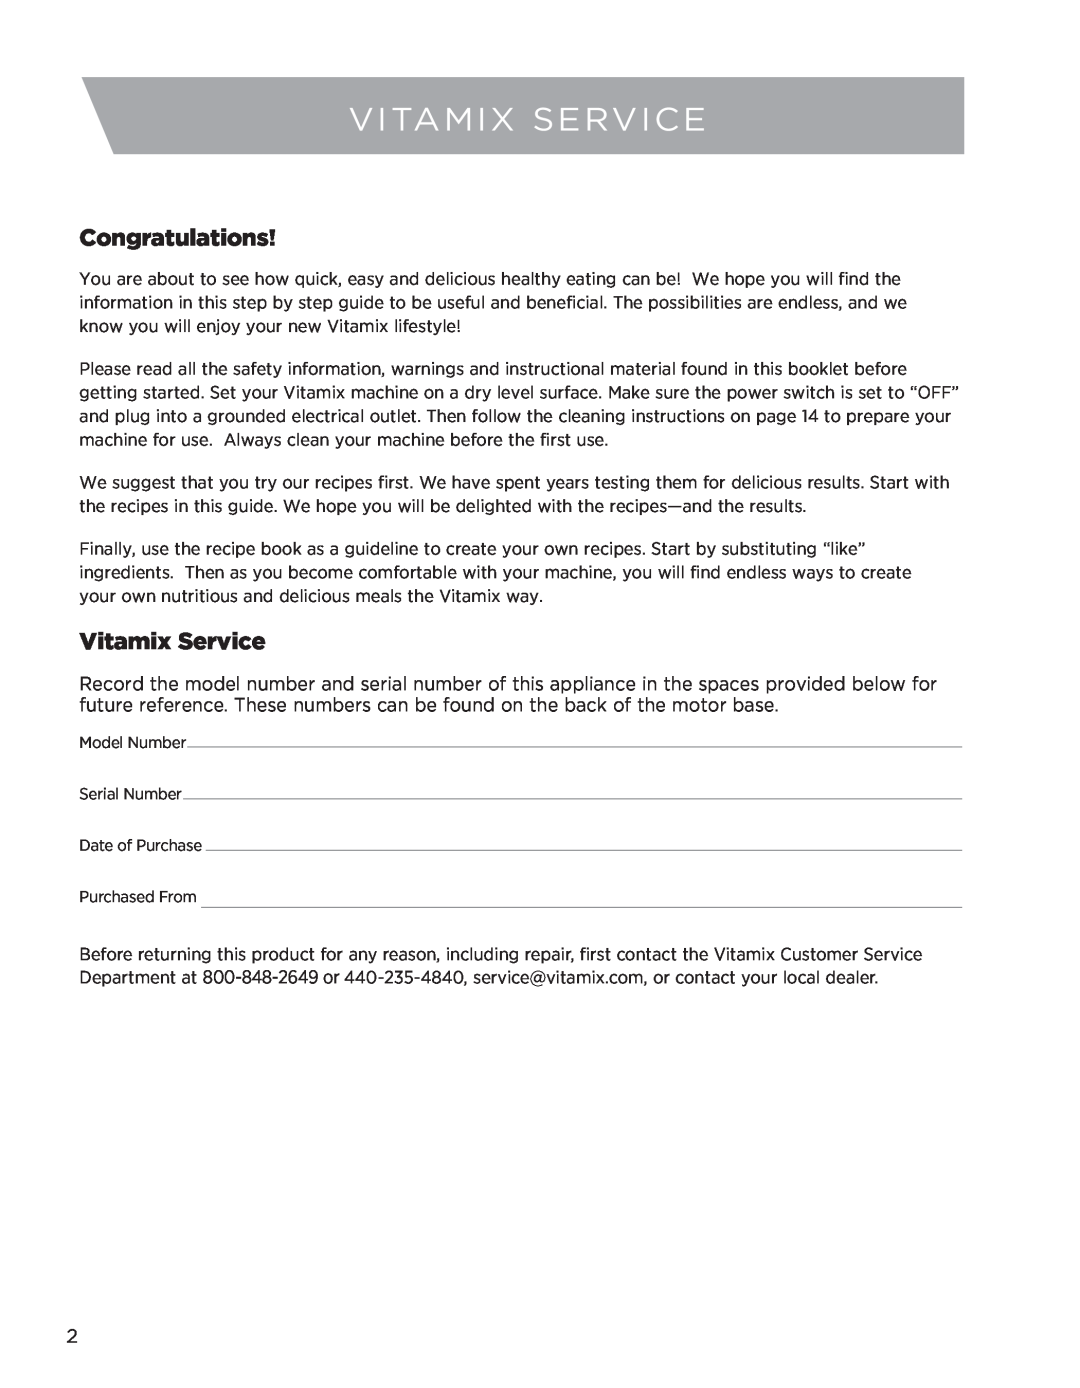 Vita-Mix CREATIONS GALAXY CLASS owner manual Vitamix Service, Congratulations 